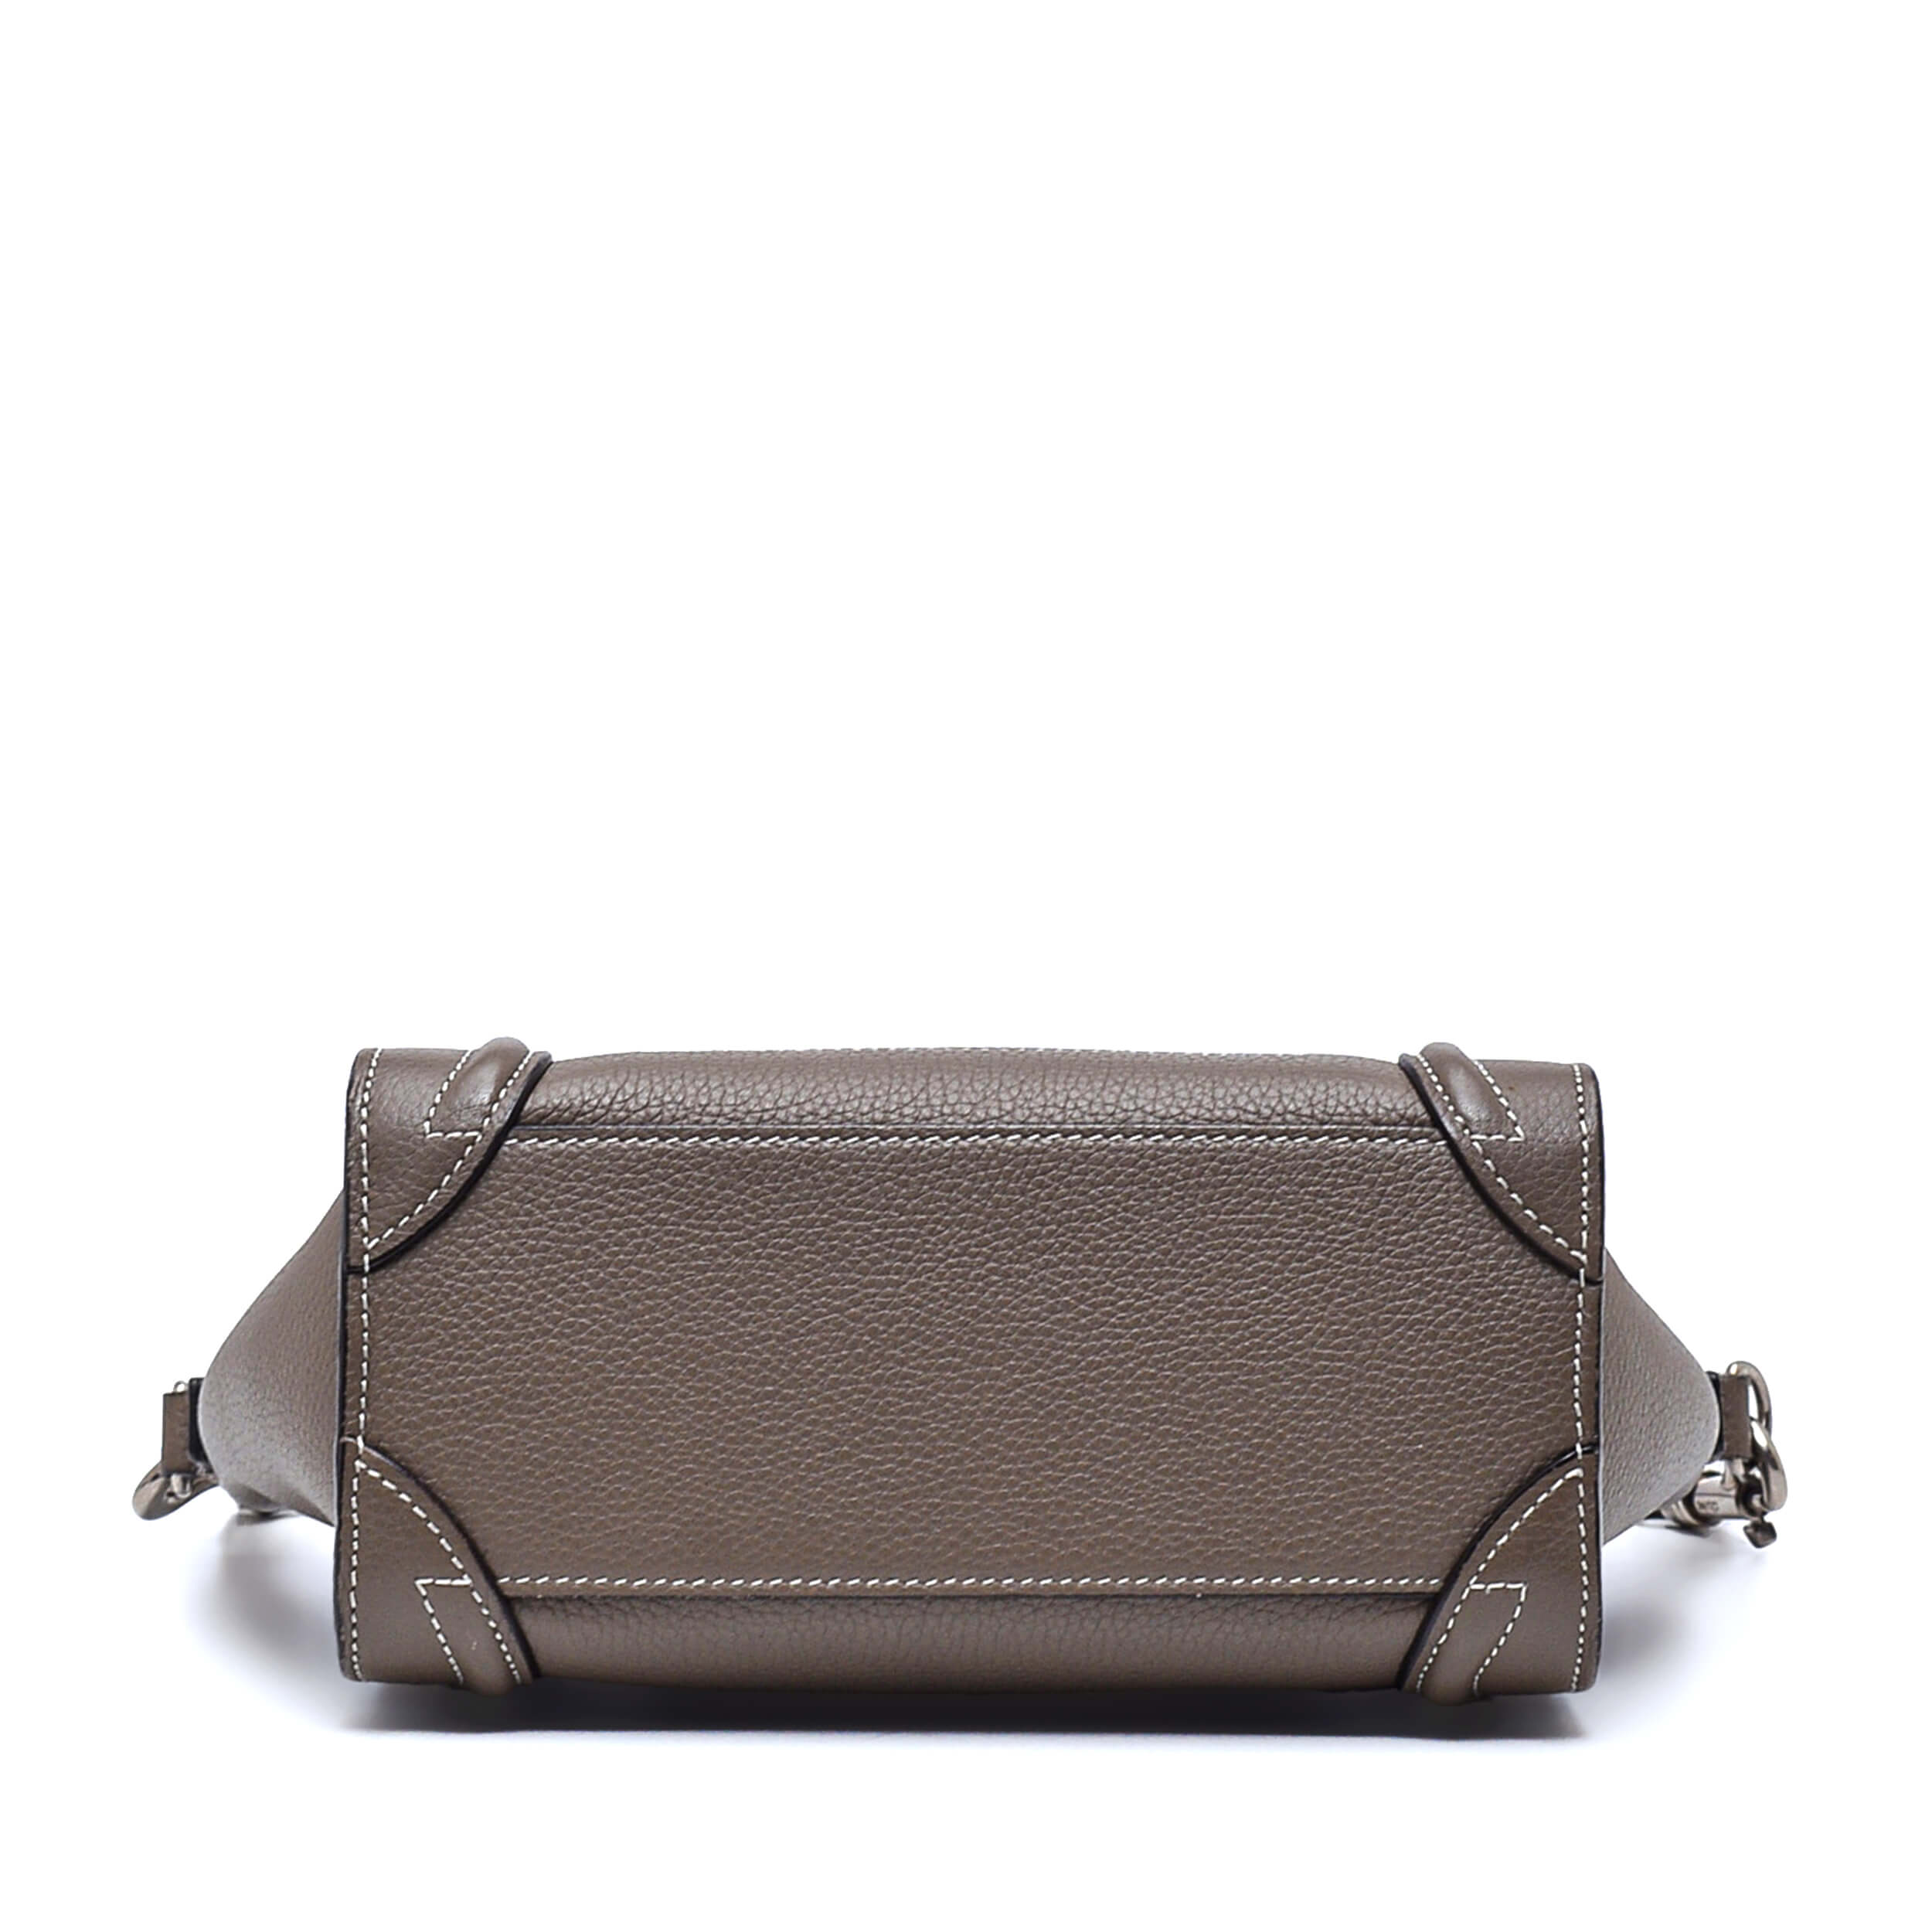 Celine - Etoupe Leather Nano Luggage Bag